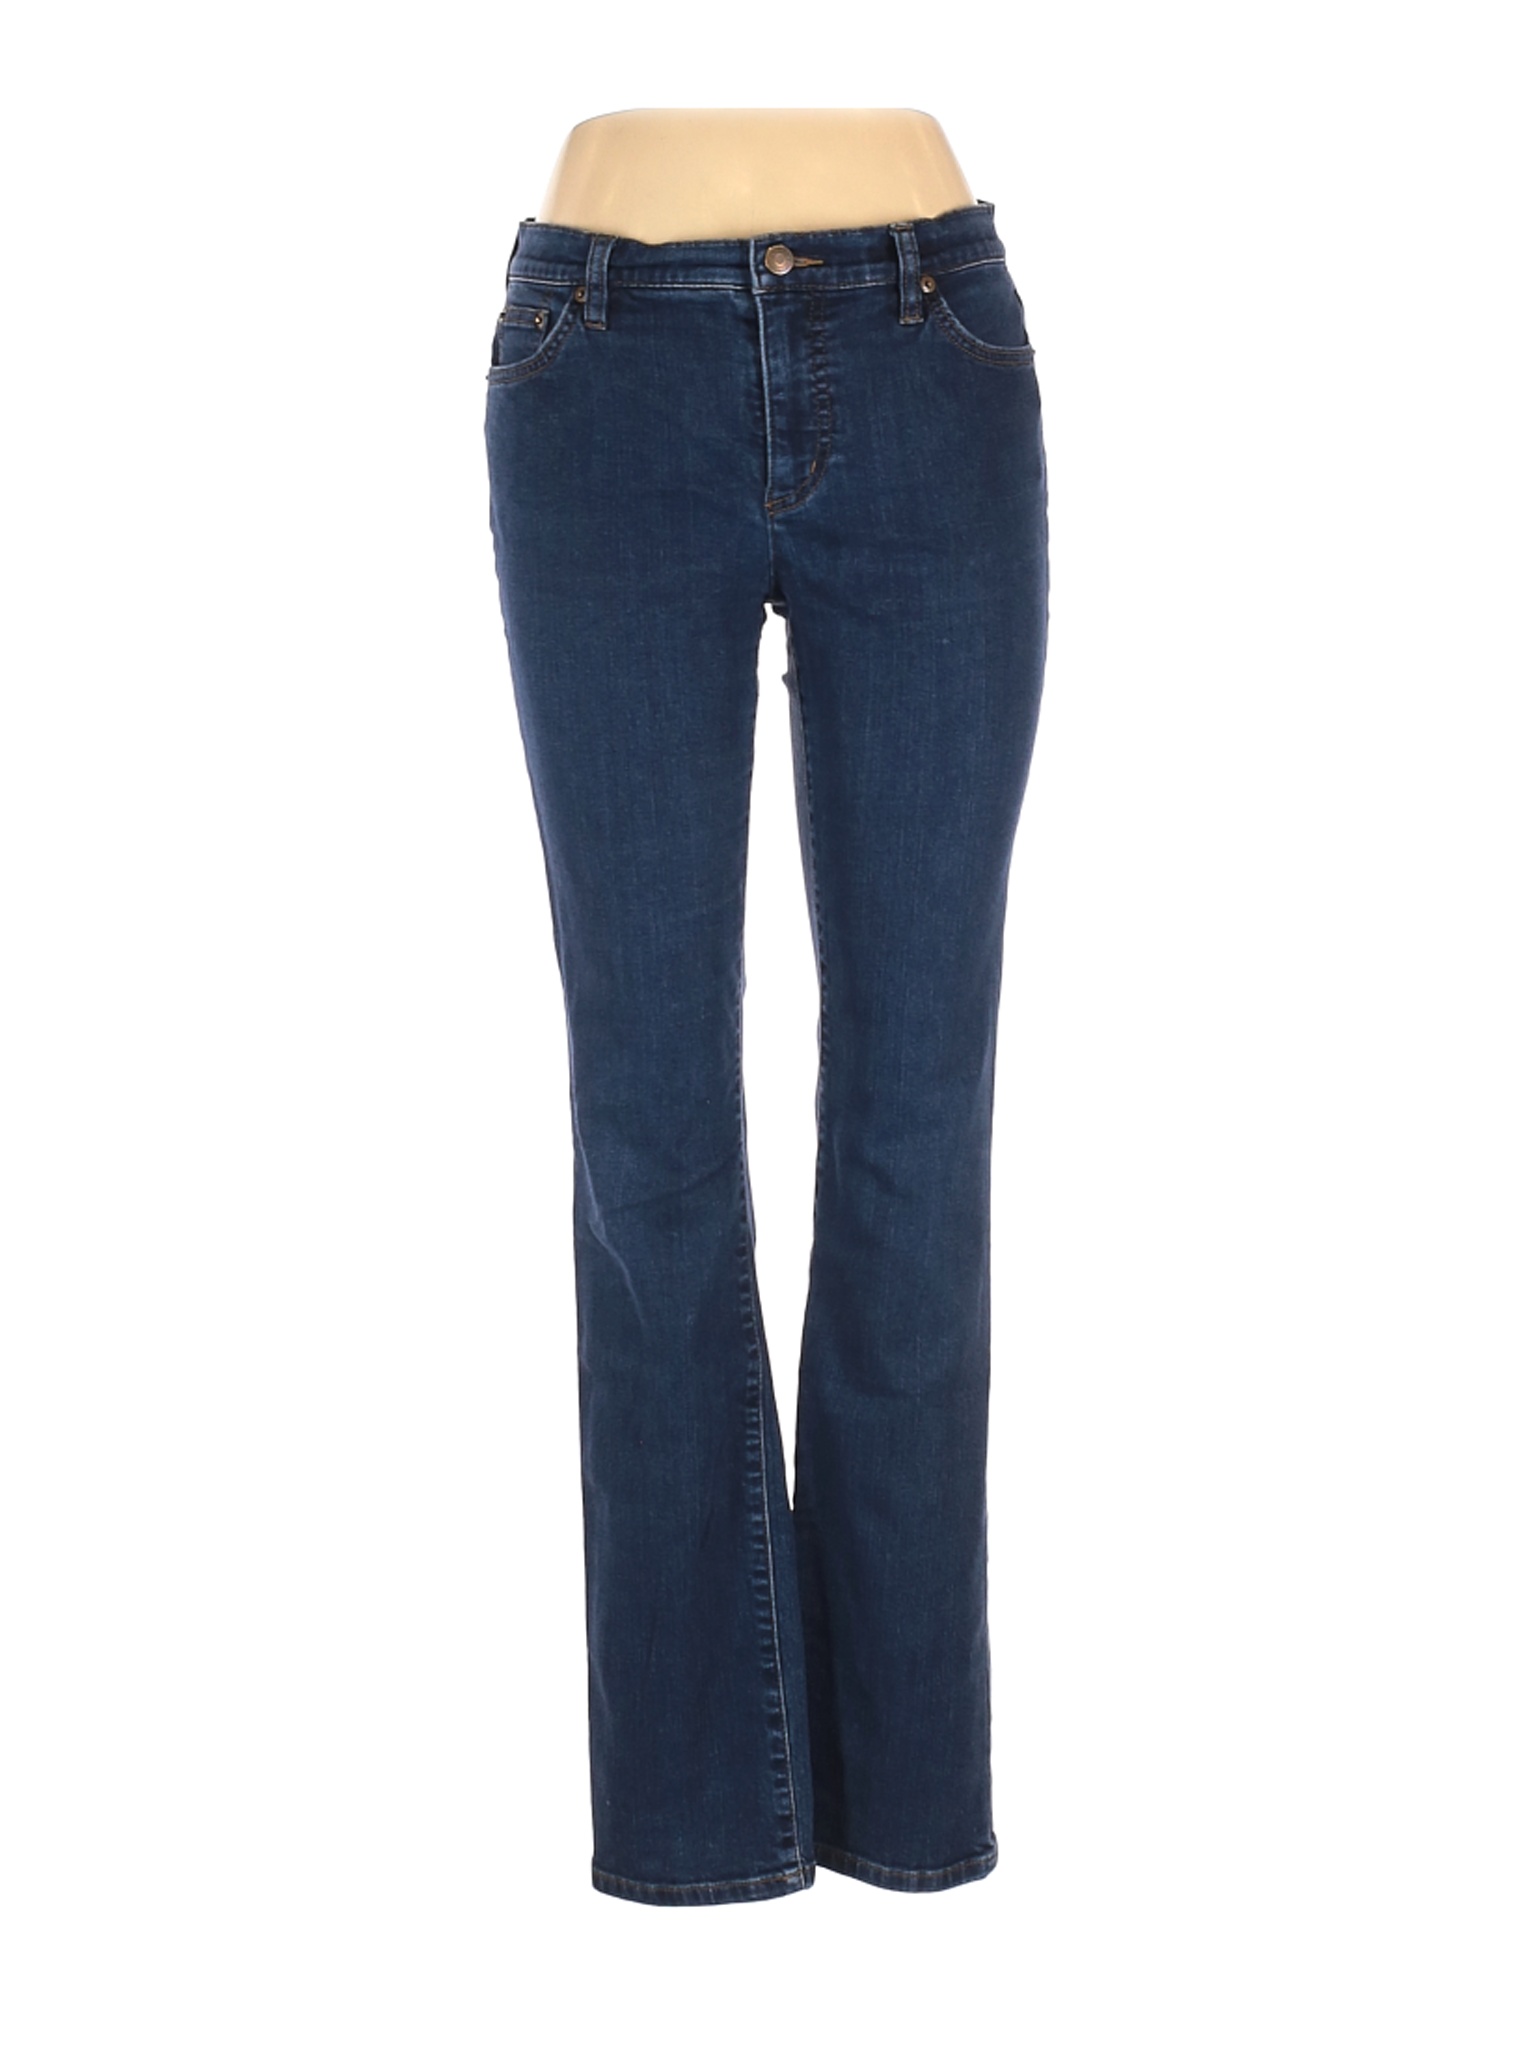 Lauren Jeans Co. Women Blue Jeans 10 | eBay